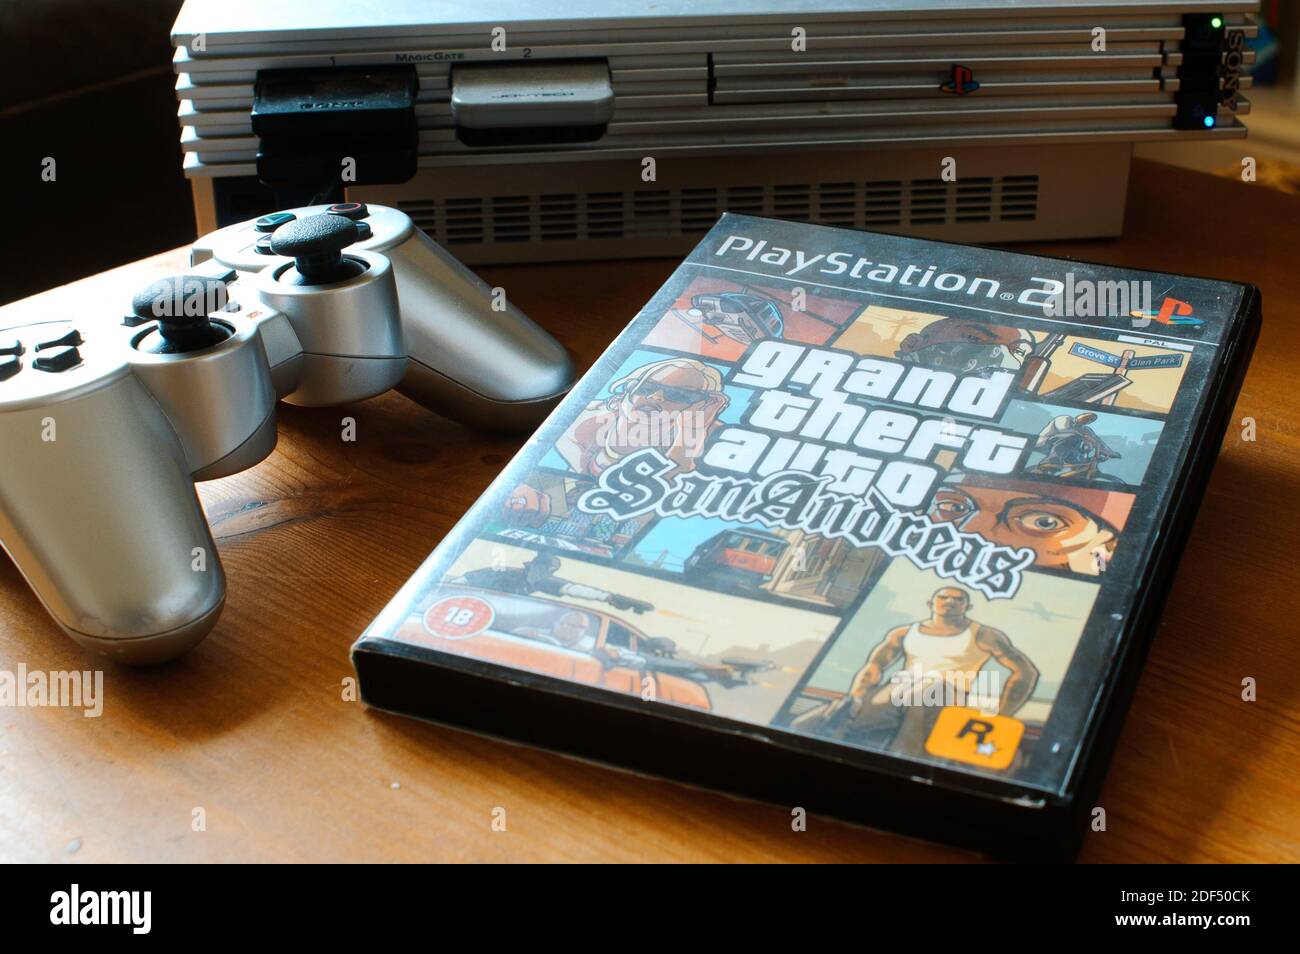 Grand Theft Auto, San Andreas Video Game per PlayStation 2, lanciato nel 2004 come settimo titolo della serie Foto Stock